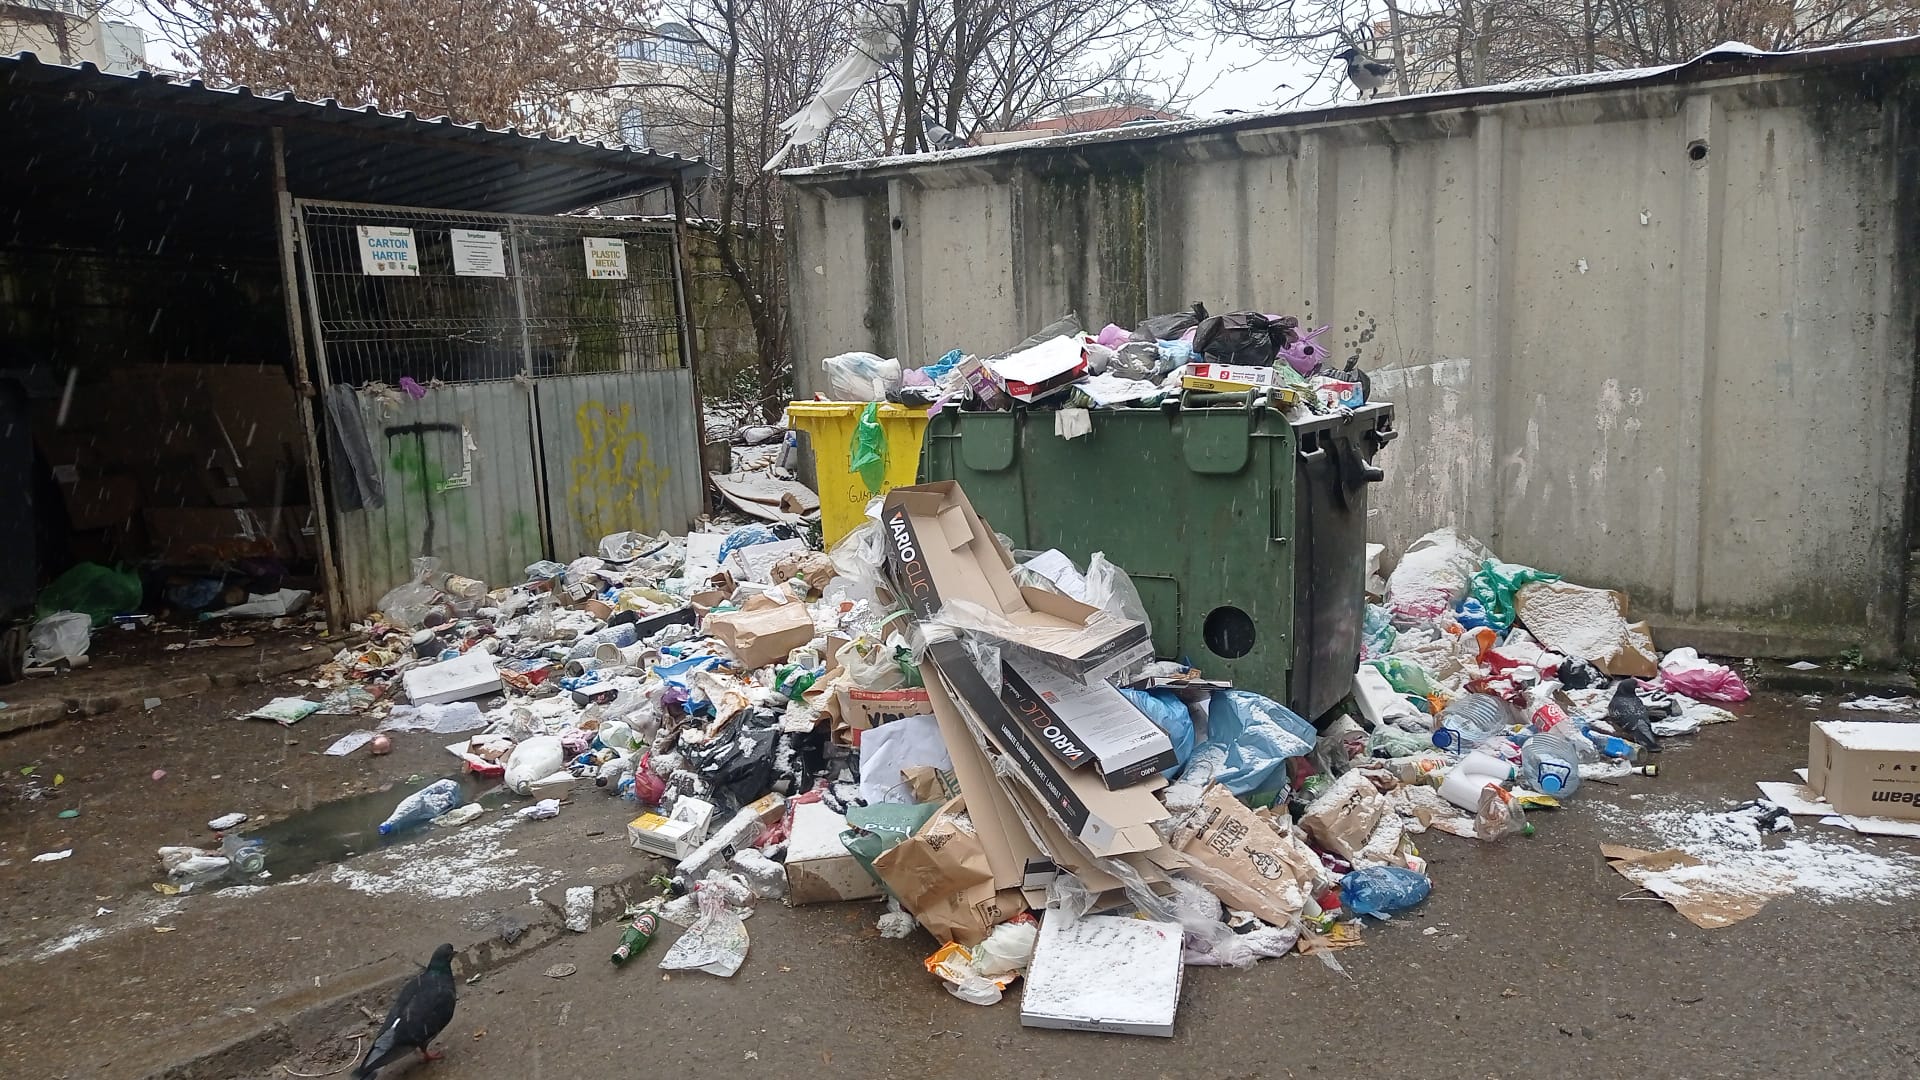 Gunoaie neridicate în zona Aurel Vlaicu. Fotografie făcută la data de 1 februarie 2023 / Foto: monitorulcj.ro